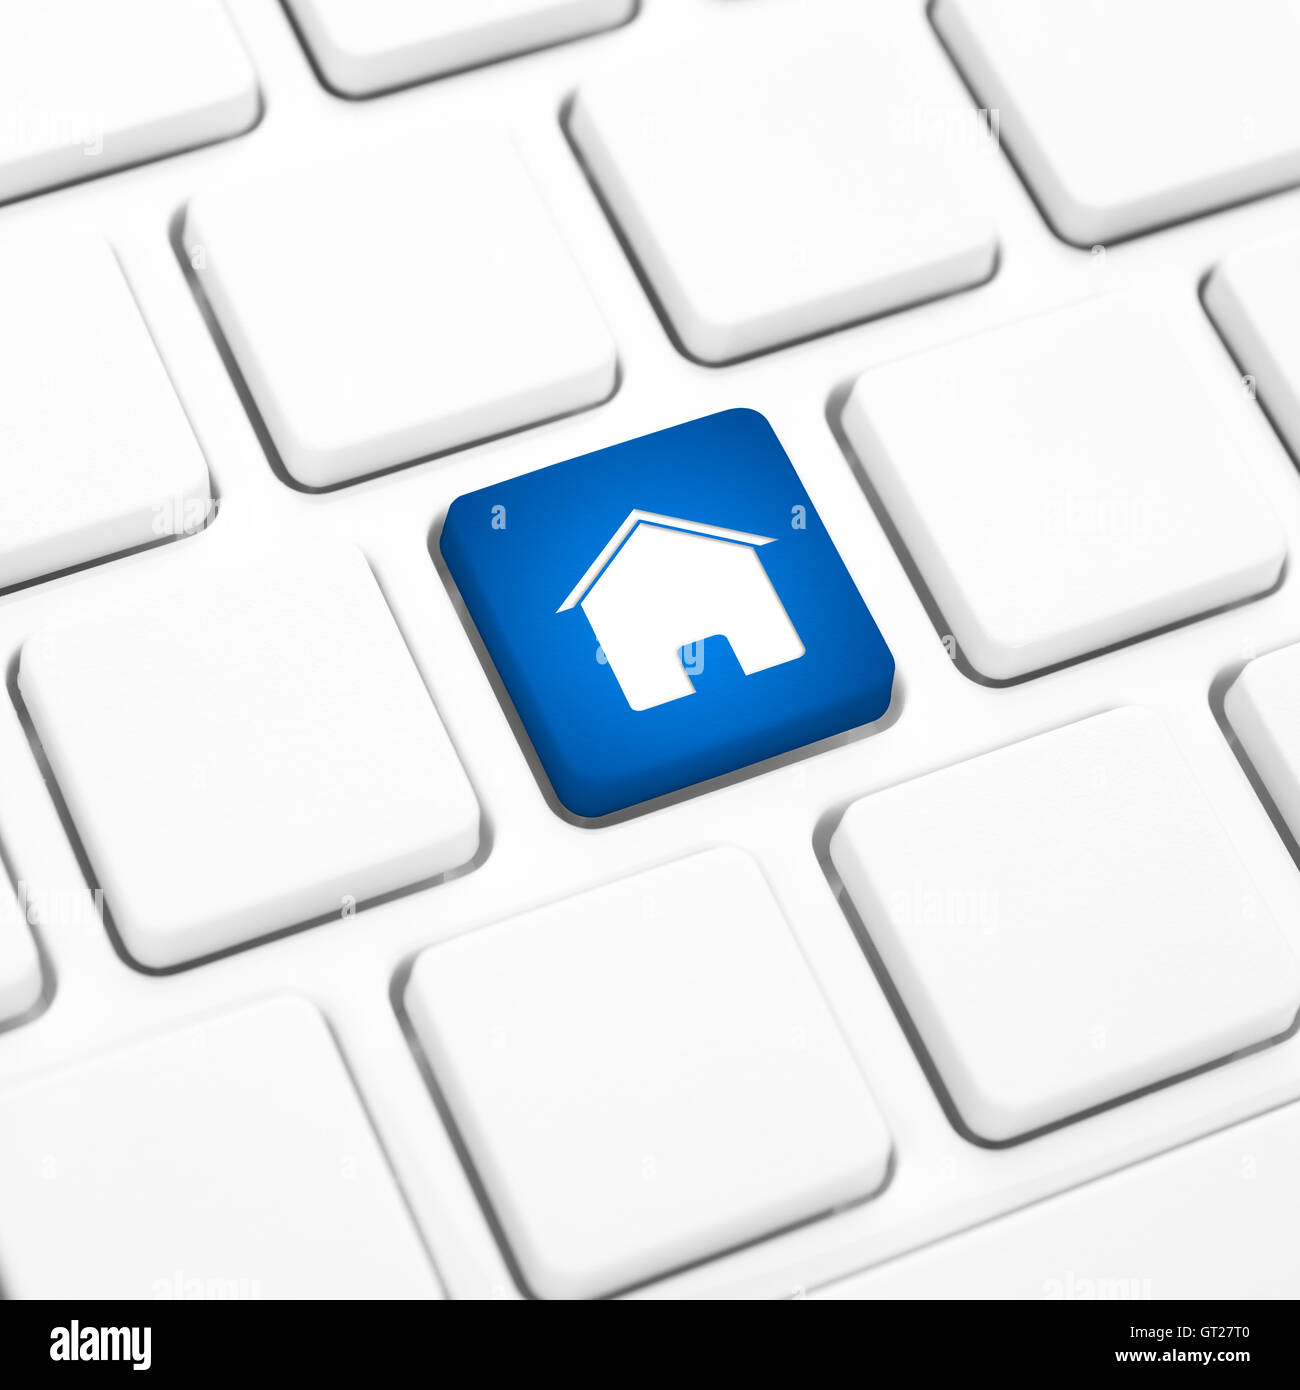 Home o immobili concetto, blue house pulsante o tasto sulla tastiera bianca Foto Stock